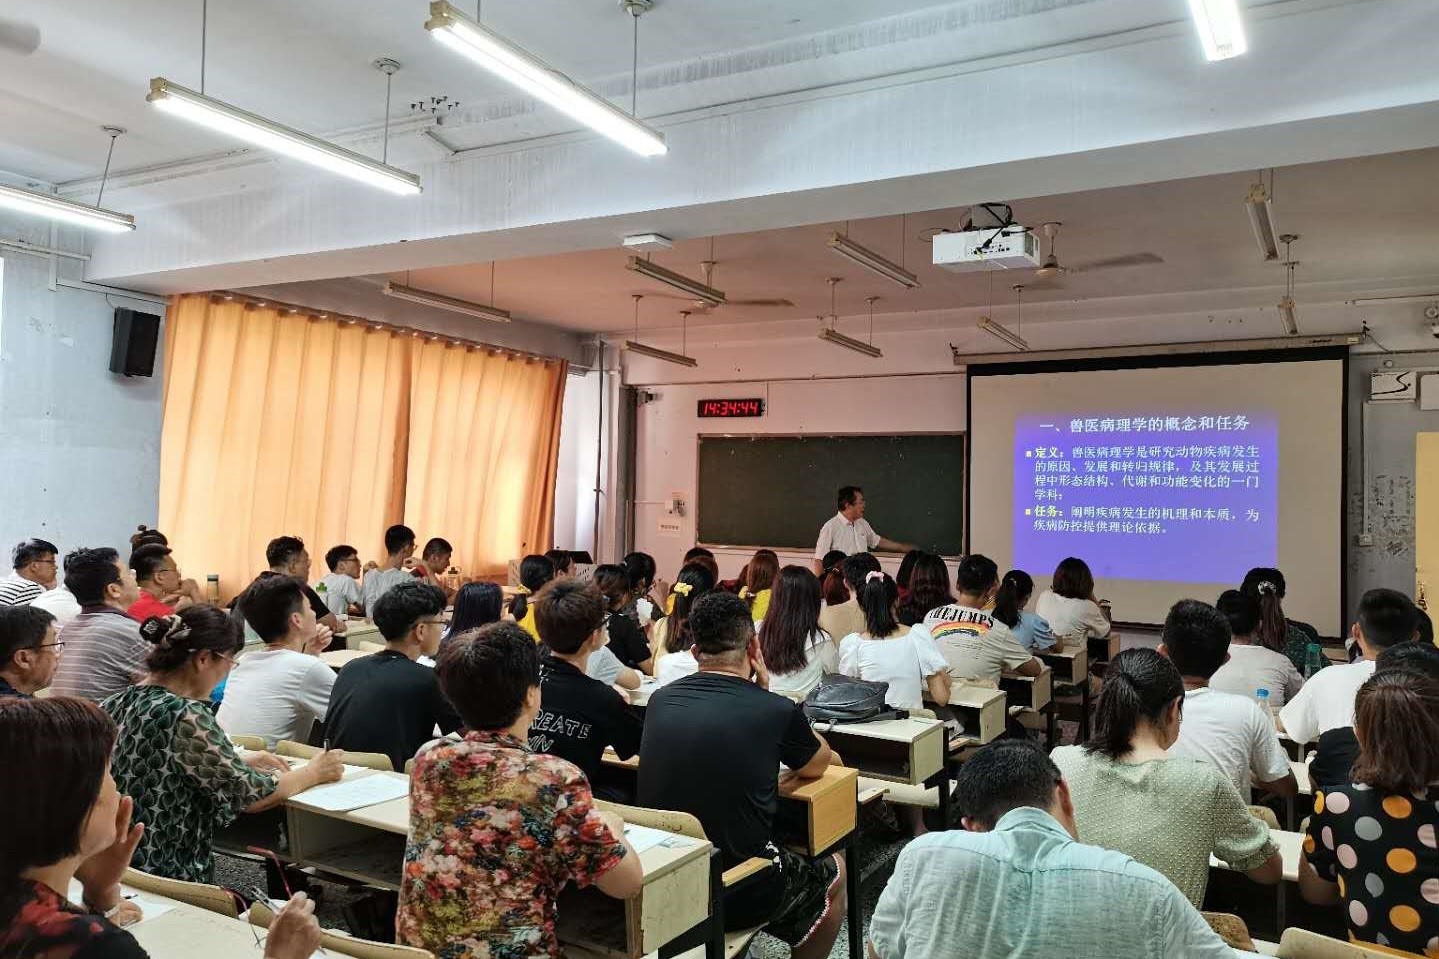 【青马工程】理学院举办“学生干部的领导力与影响力”讲座